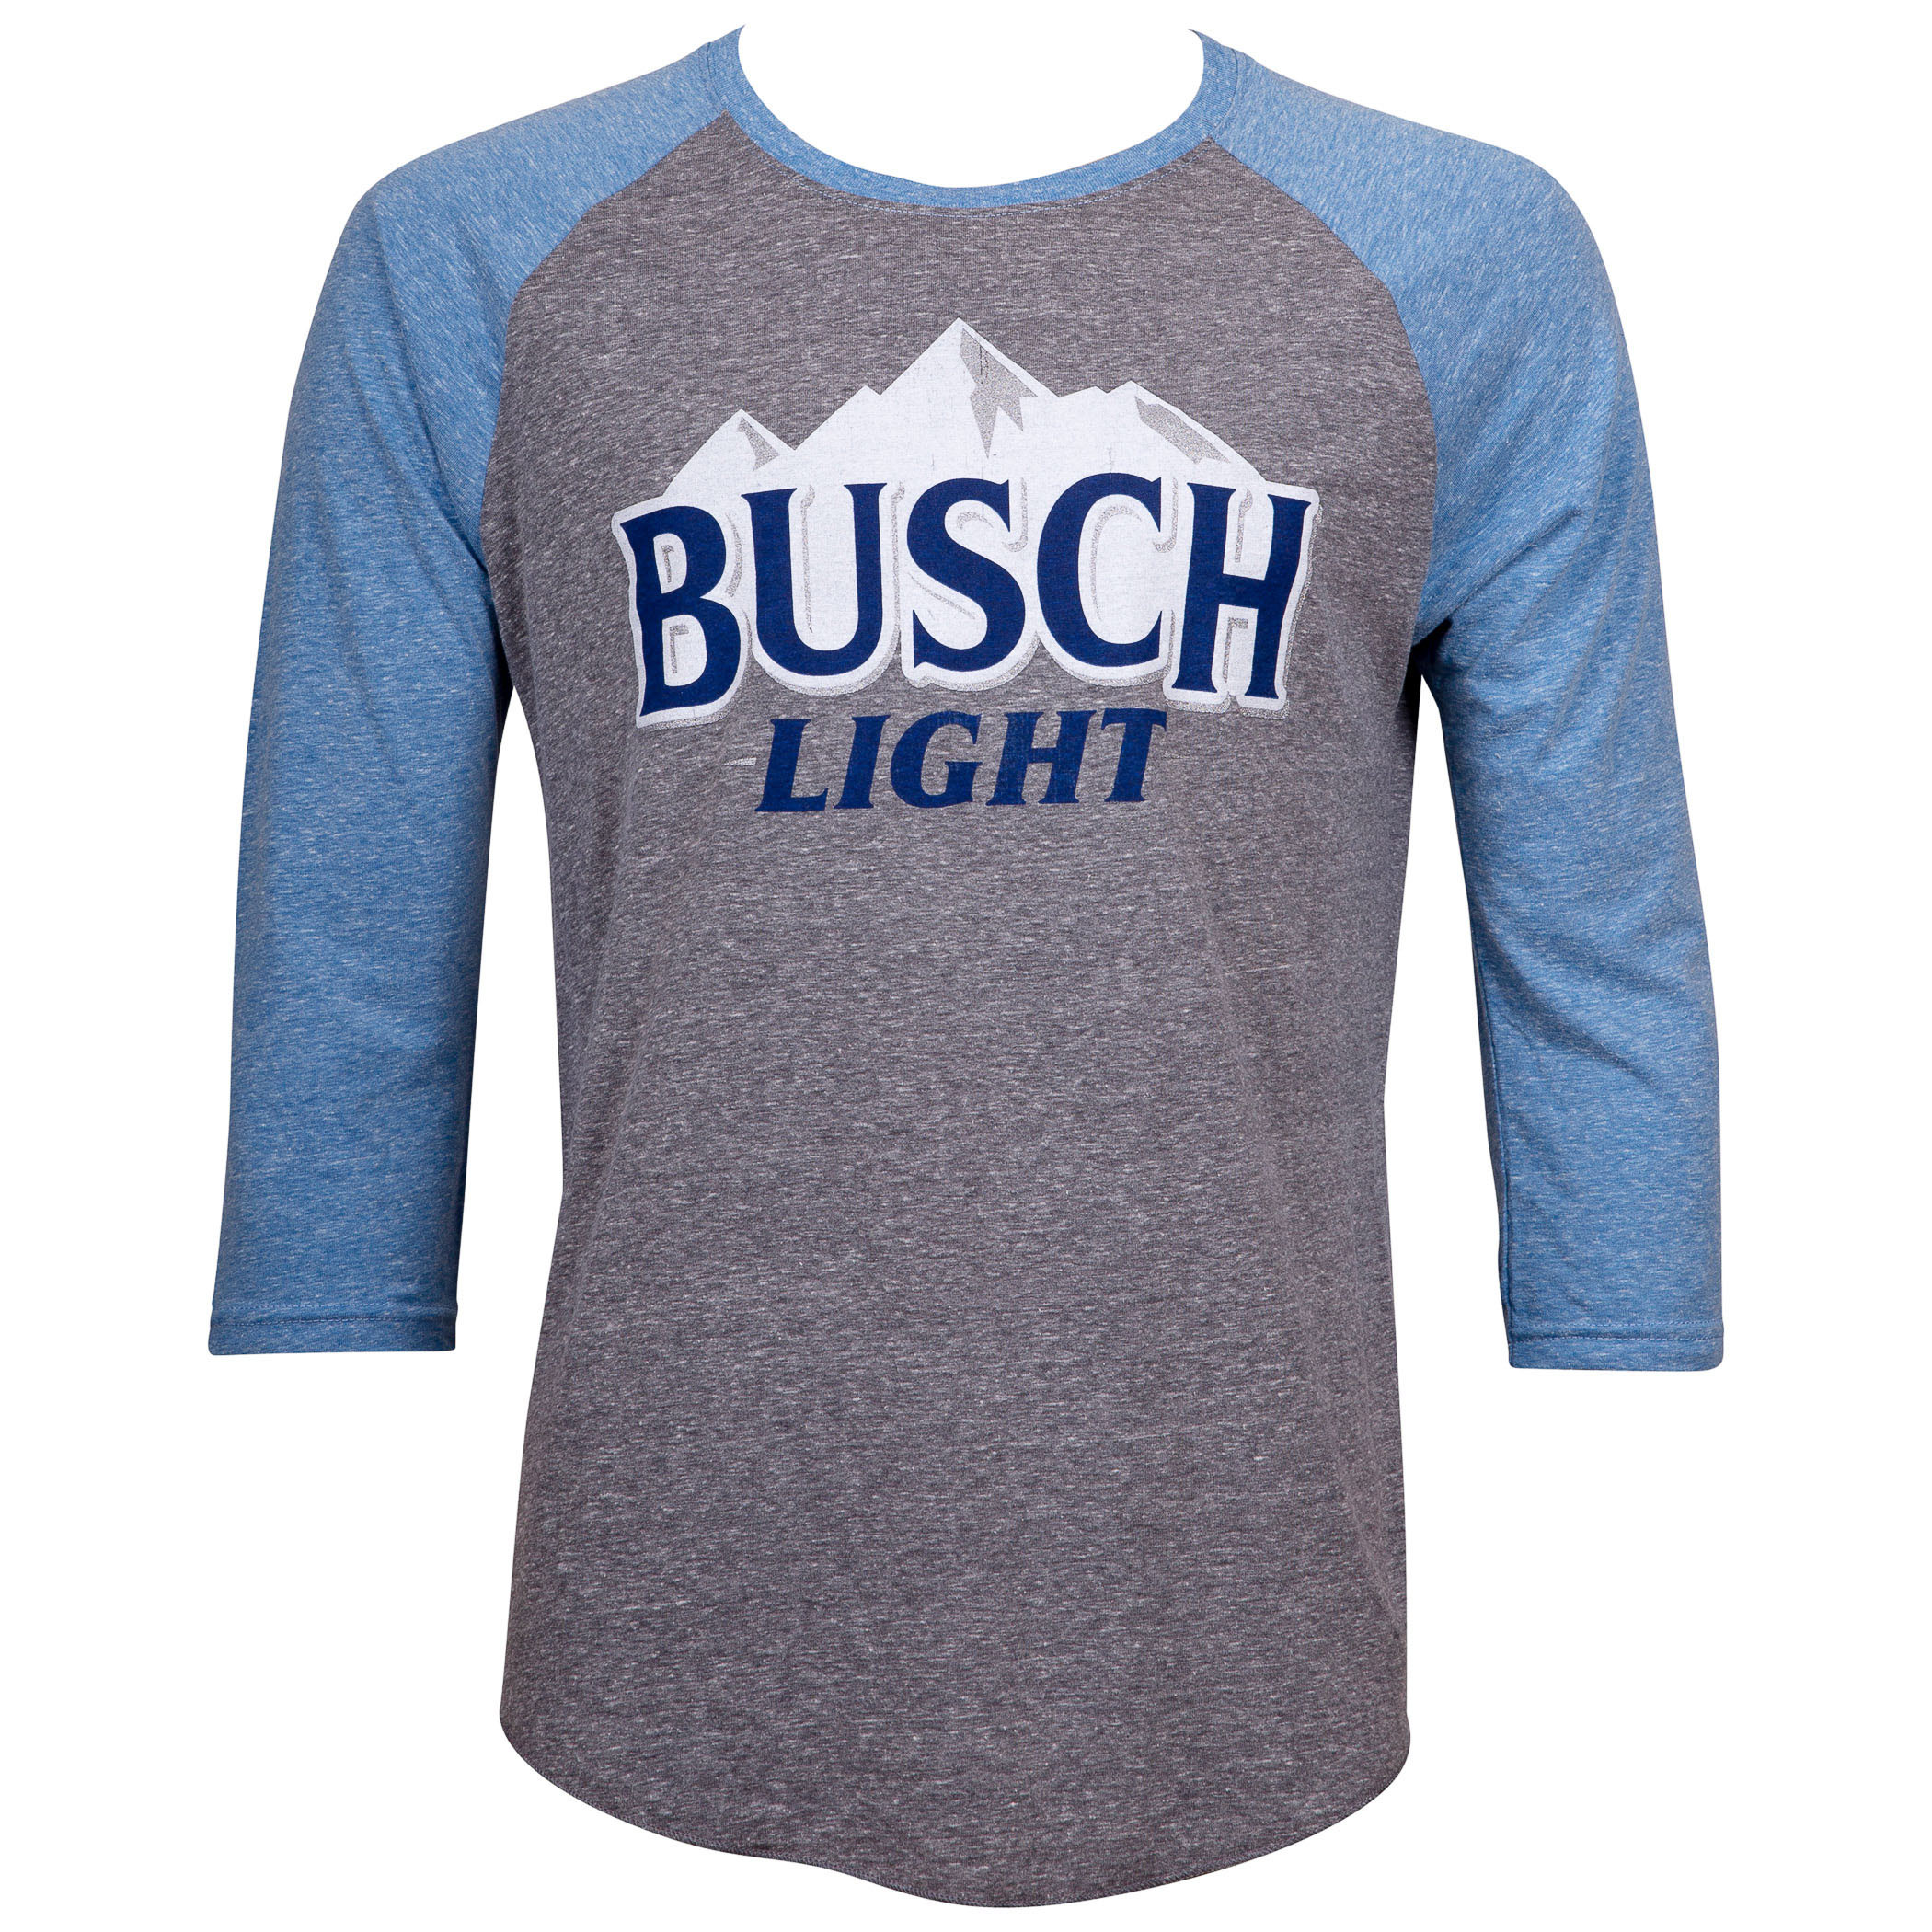 Busch Light Blue and Grey Raglan T-Shirt